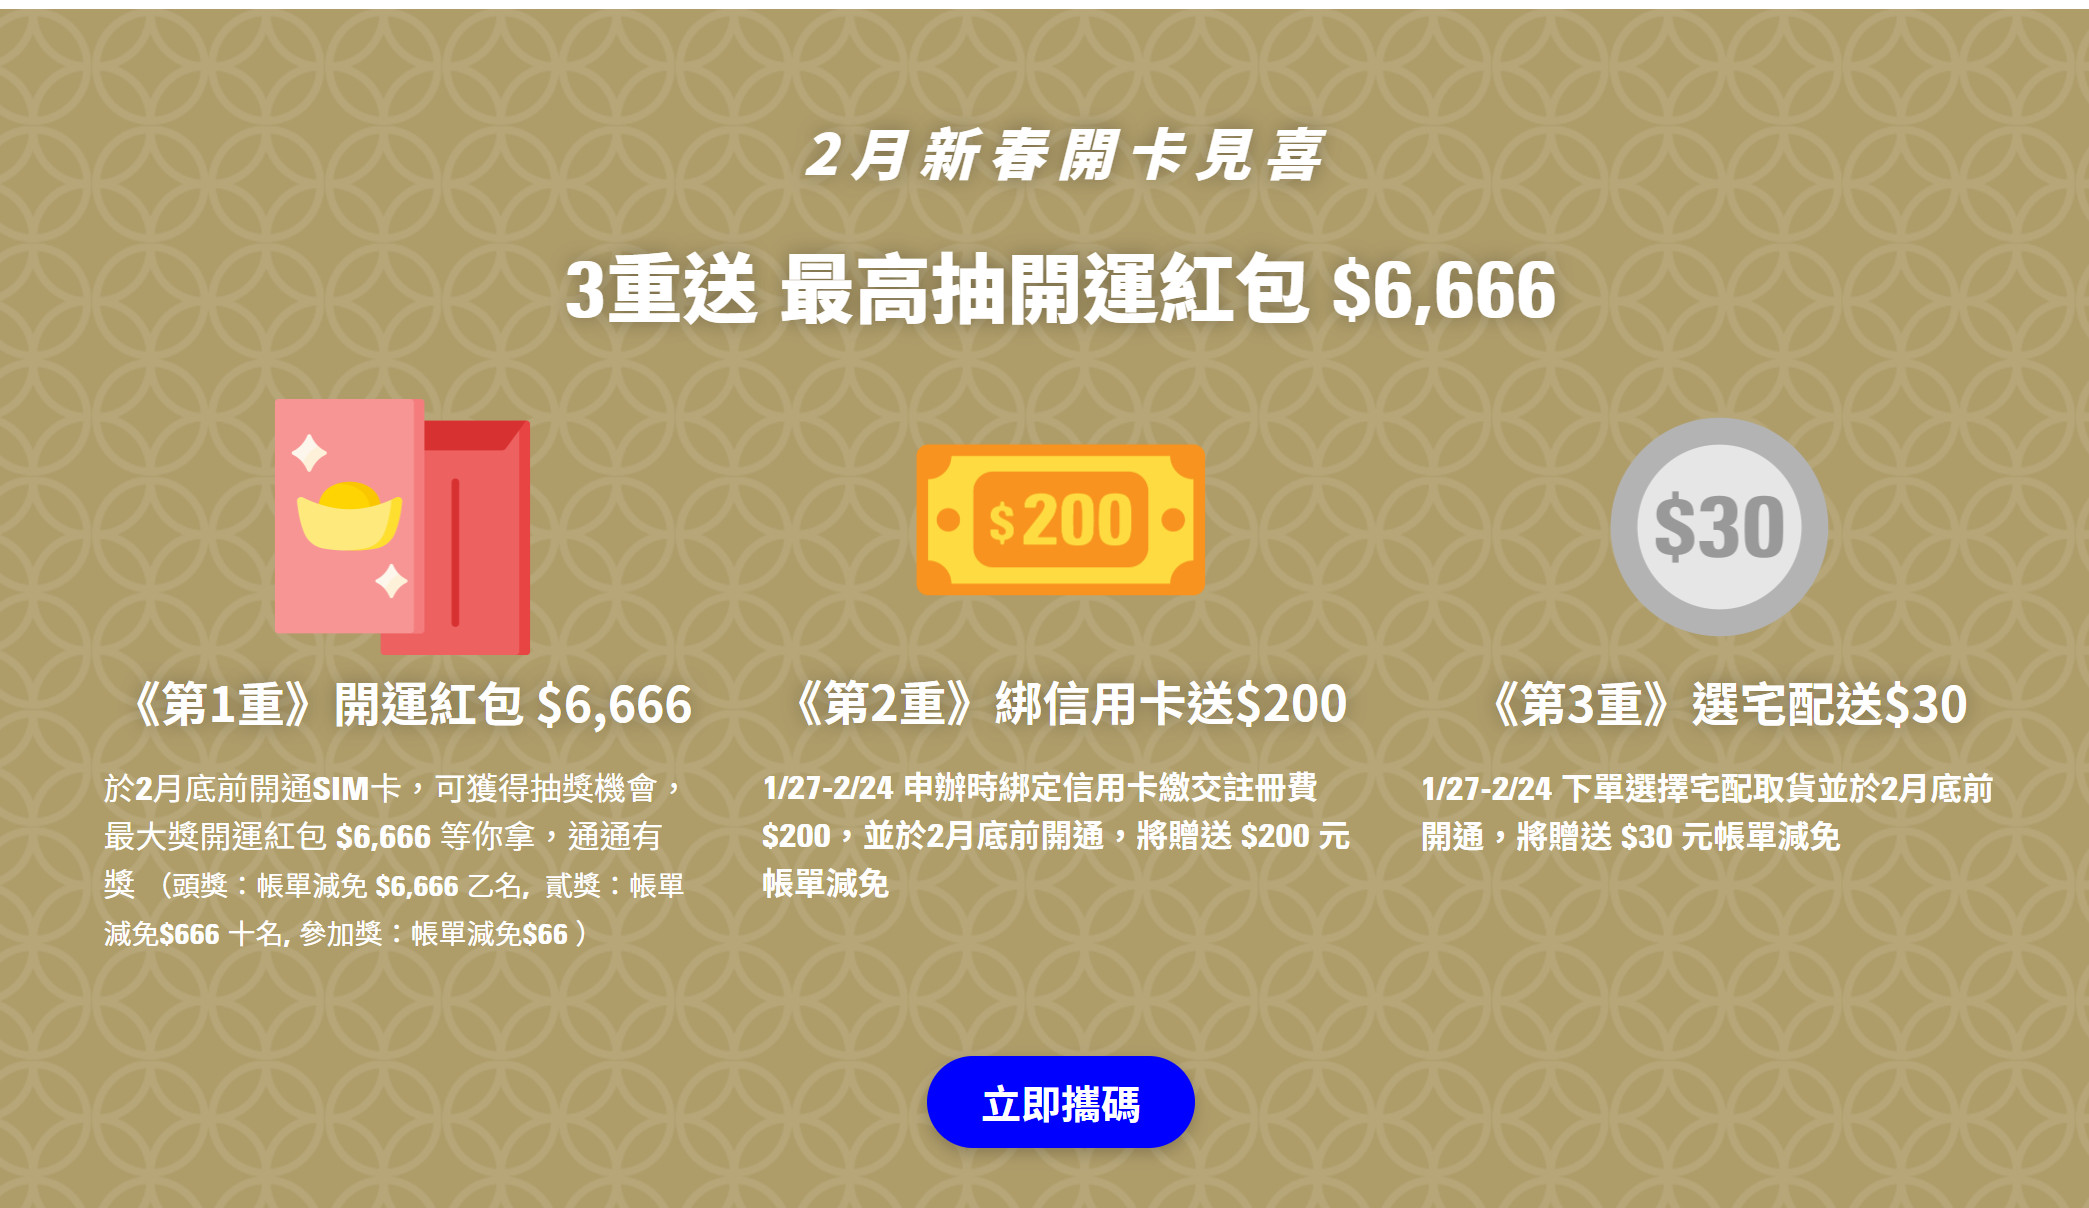 【無框行動】新春專案，中華電信大4G網路吃到飽466元，低流量只要166元!超適合搭配台灣之星雙11專案。 - 無框行動 - 敗家達人推薦